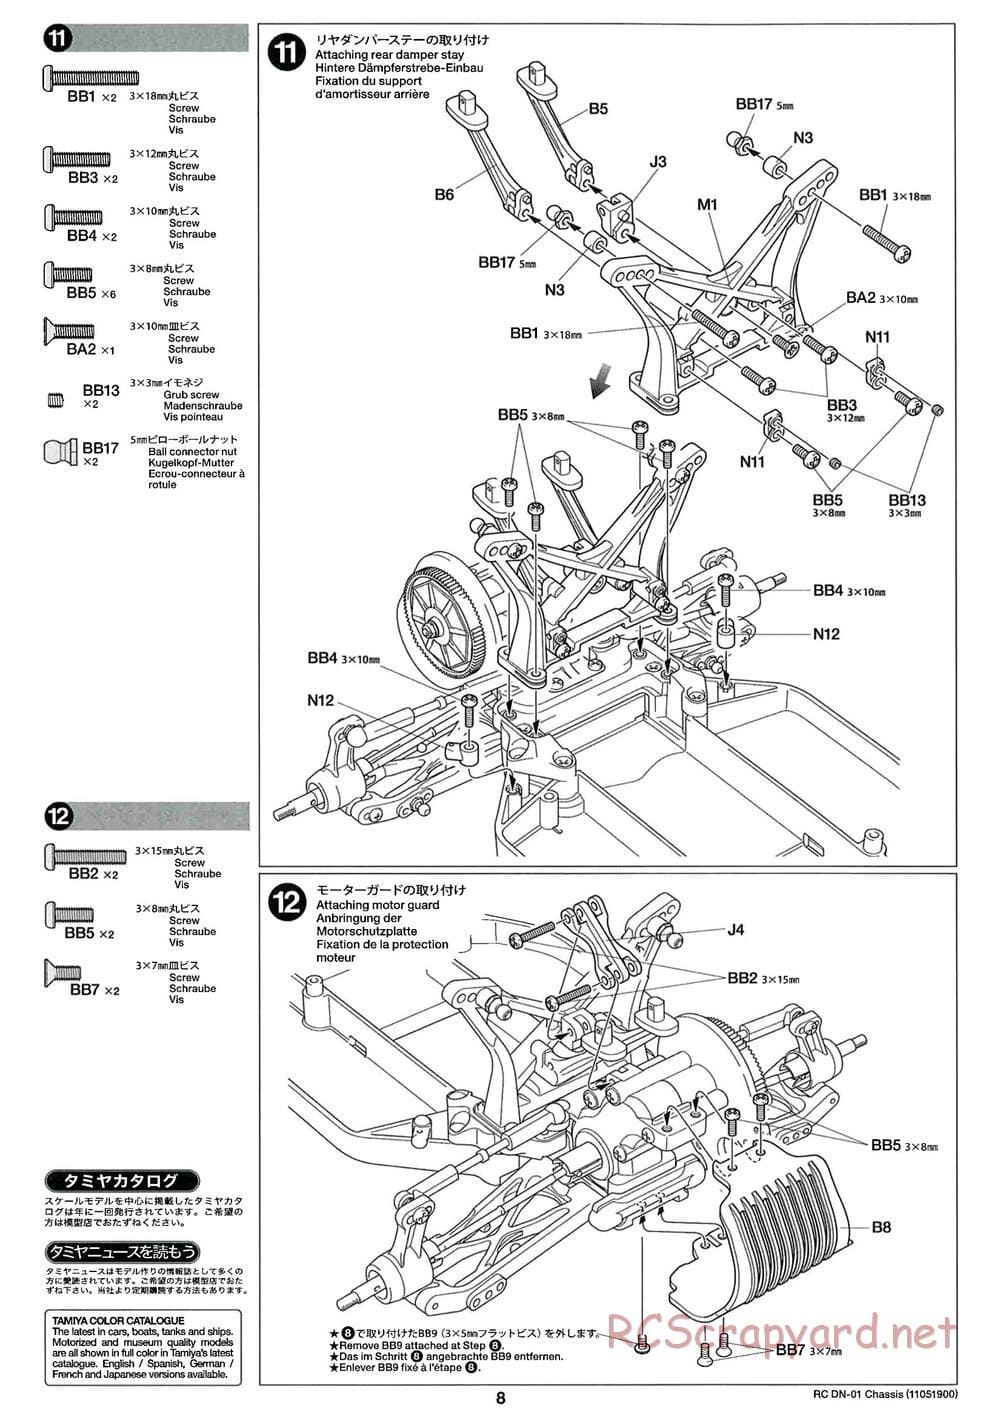 Tamiya - DN-01 Chassis - Manual - Page 8